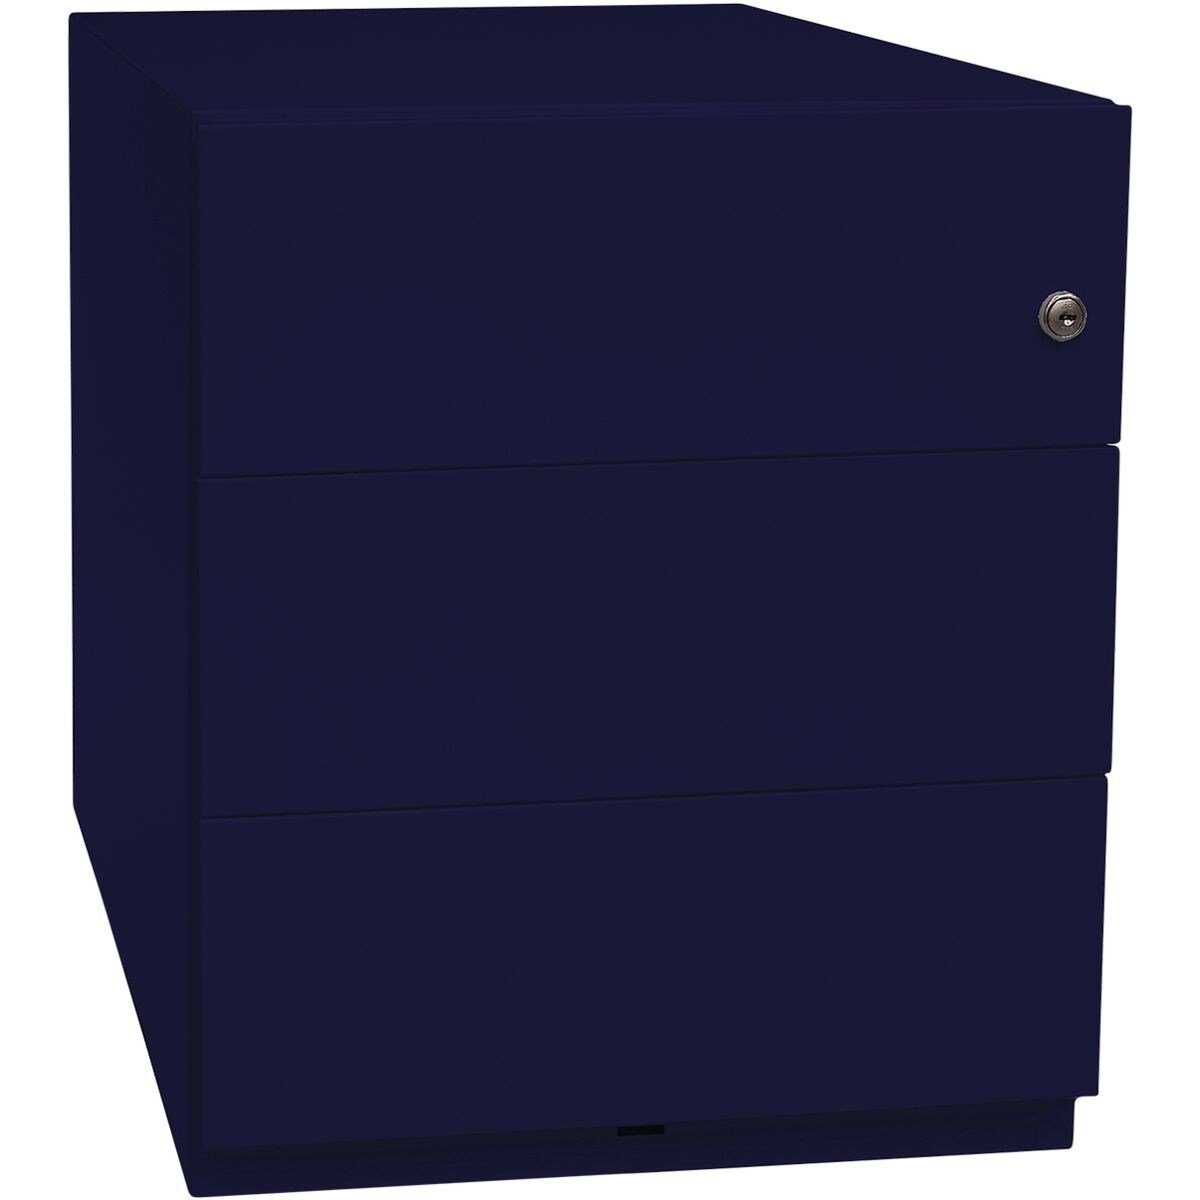 Bisley Container Note aus Stahl, mit 3 Universalschubladen oxfordblau